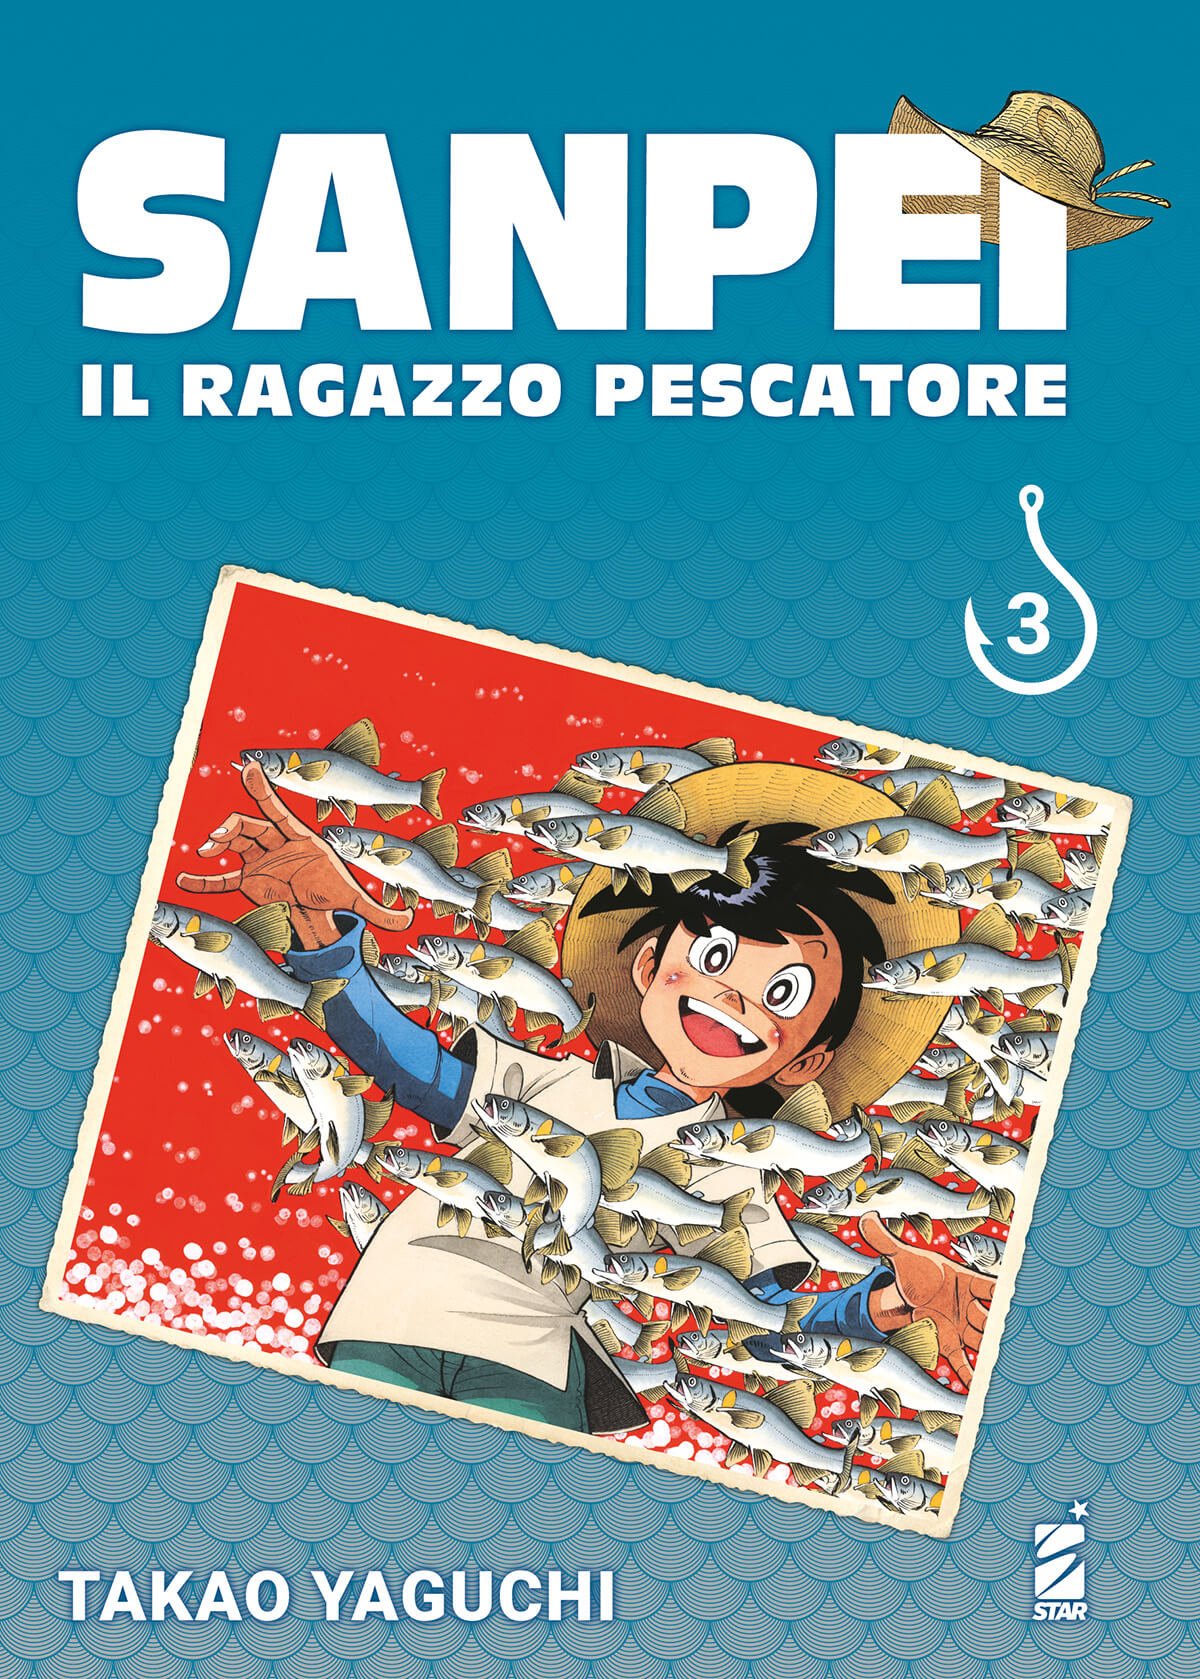 sanpei-3-1200px (1)